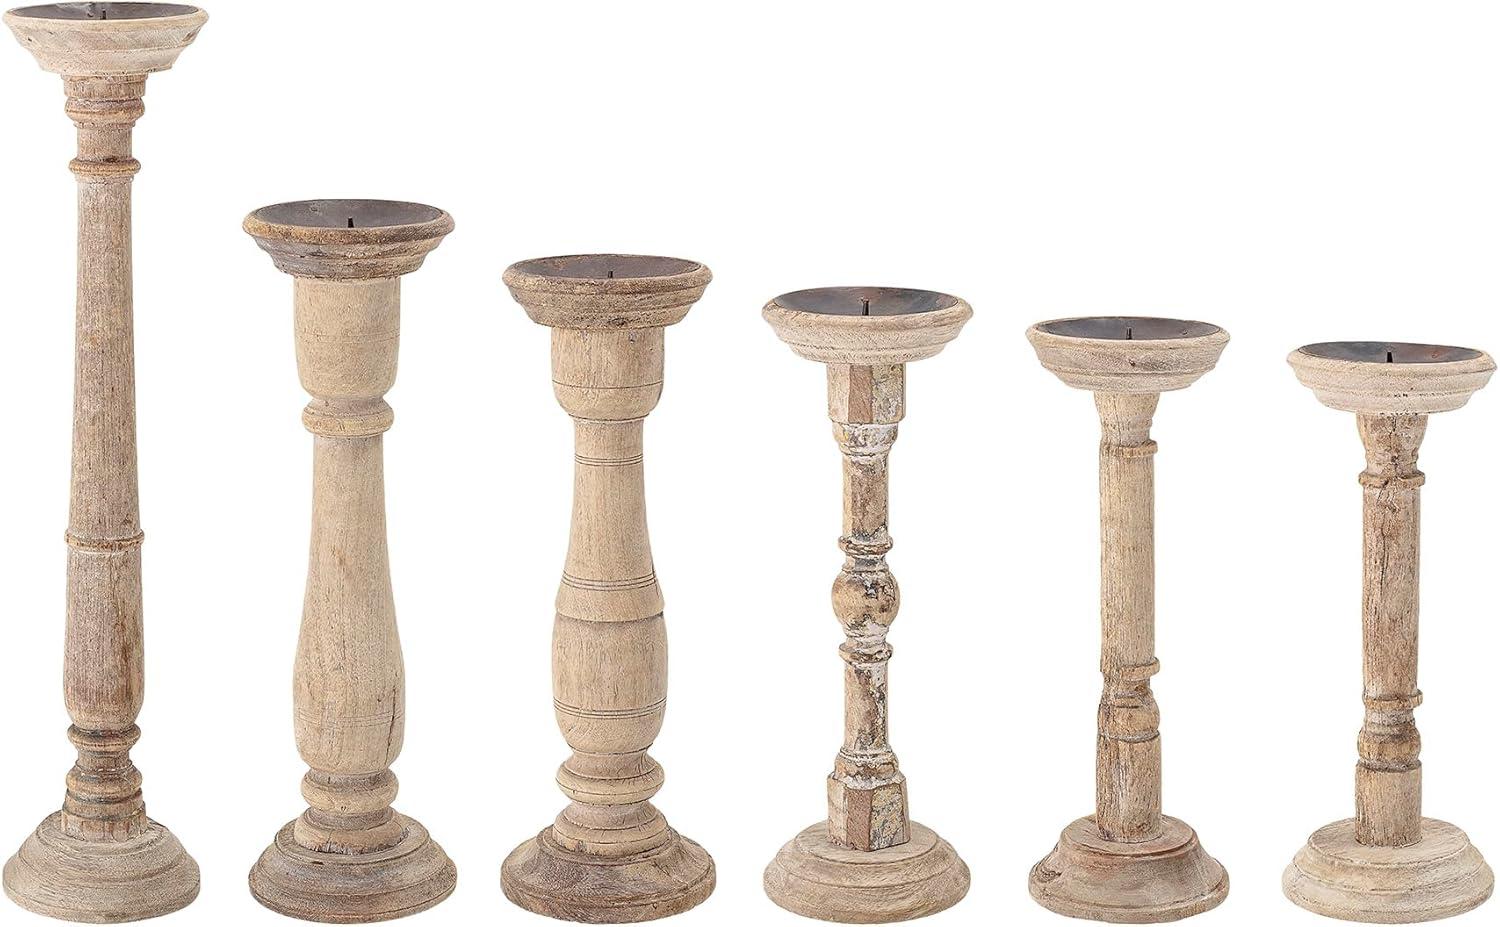 Rustic Found Wood & Metal Pillar Candleholder Set, 6 Pieces